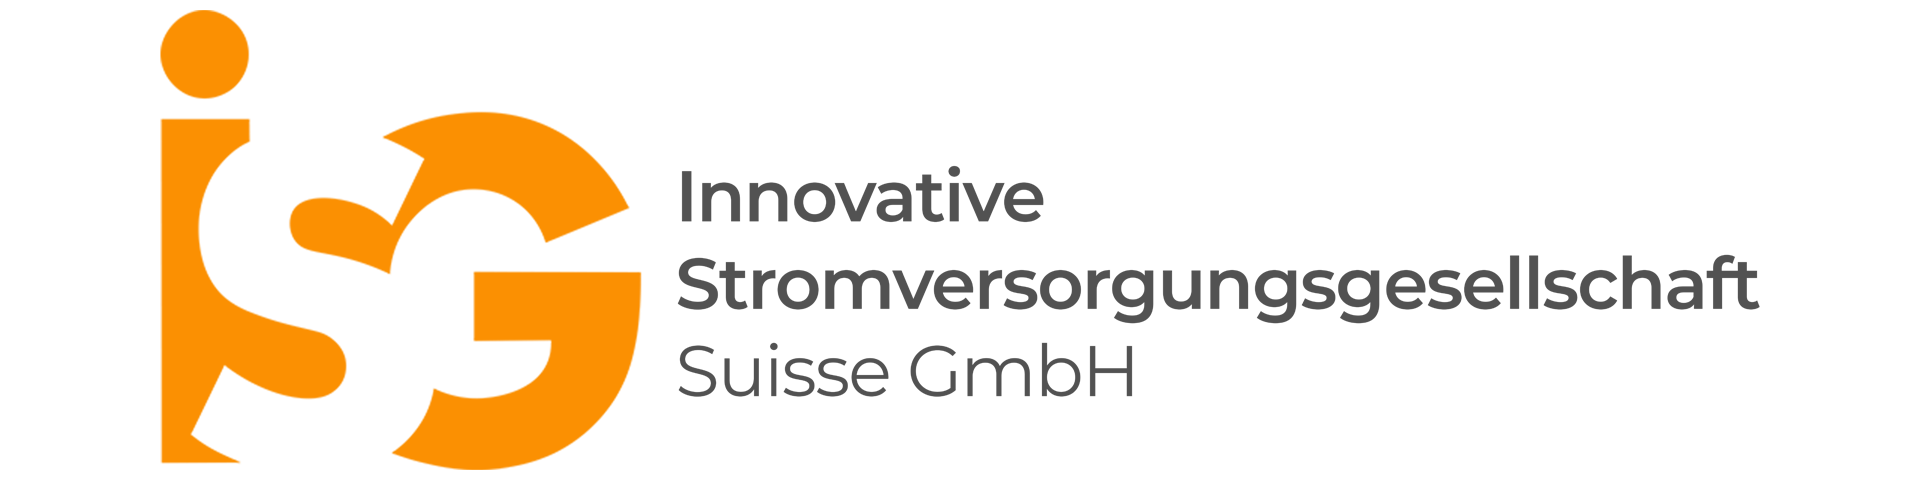 ISG Suisse GmbH Logo